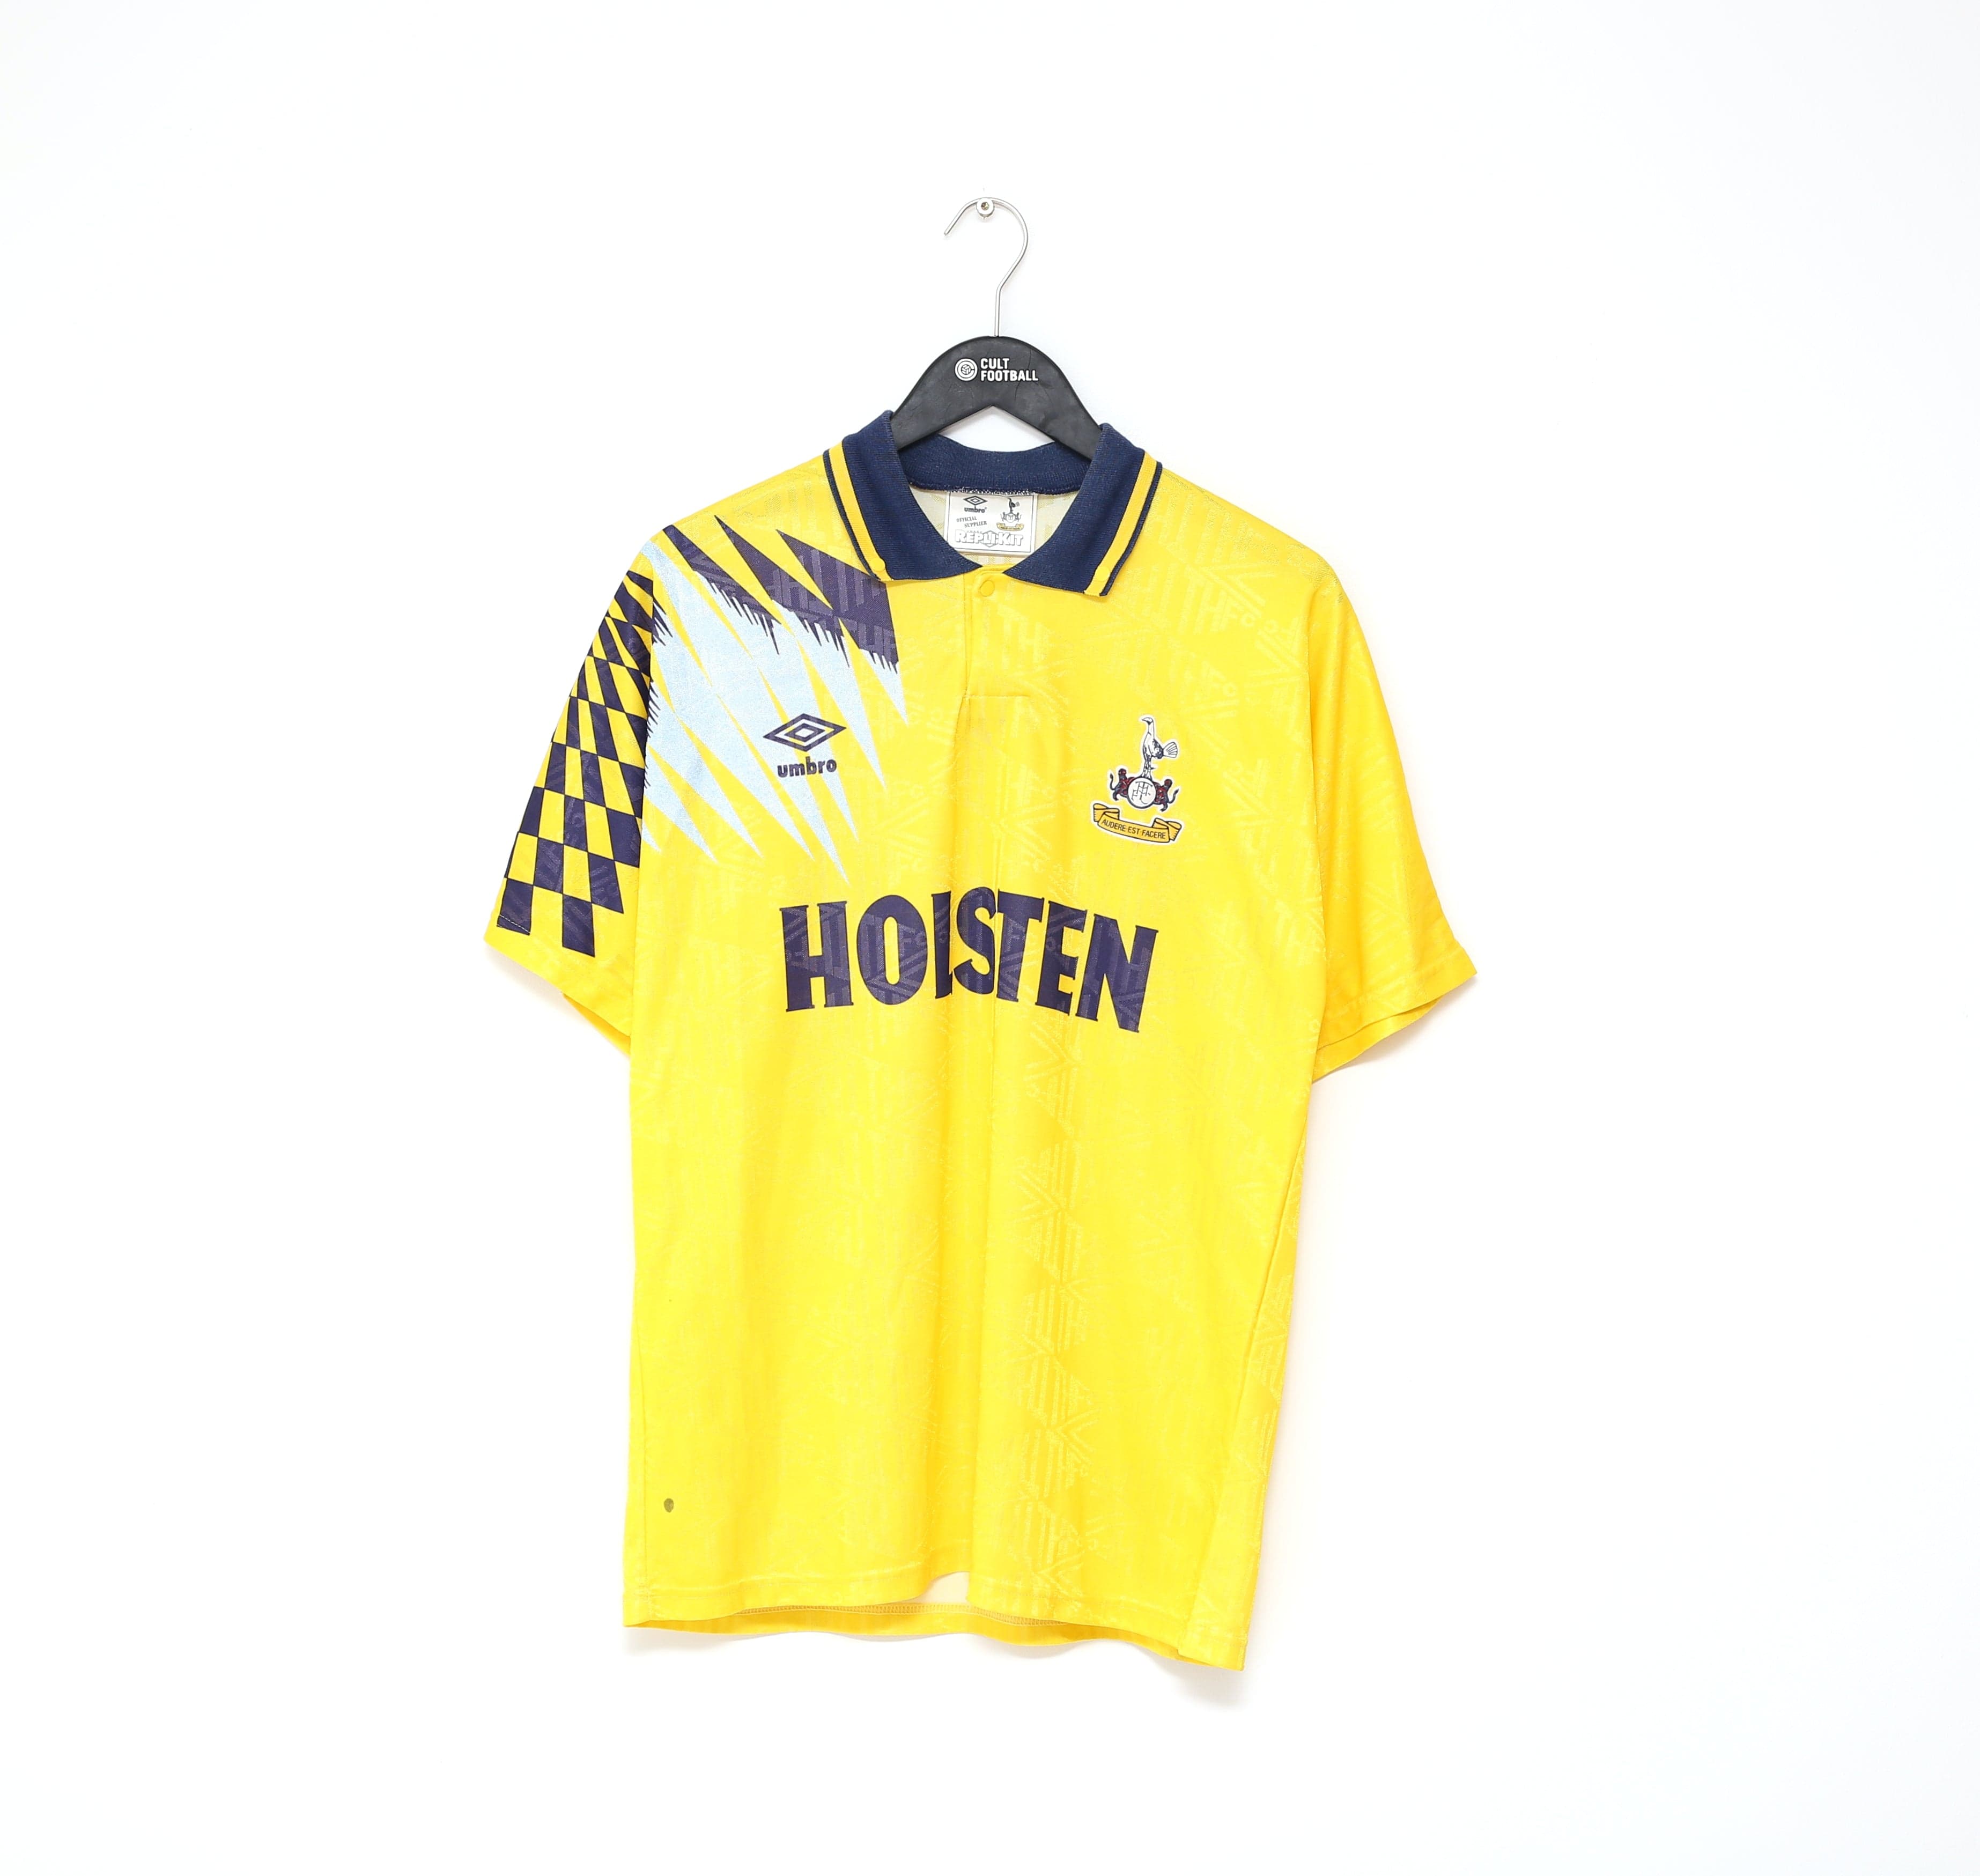 Tottenham Hotspur (Spurs) Away Football Shirt Jersey 1991/1992/1993/1994/1995